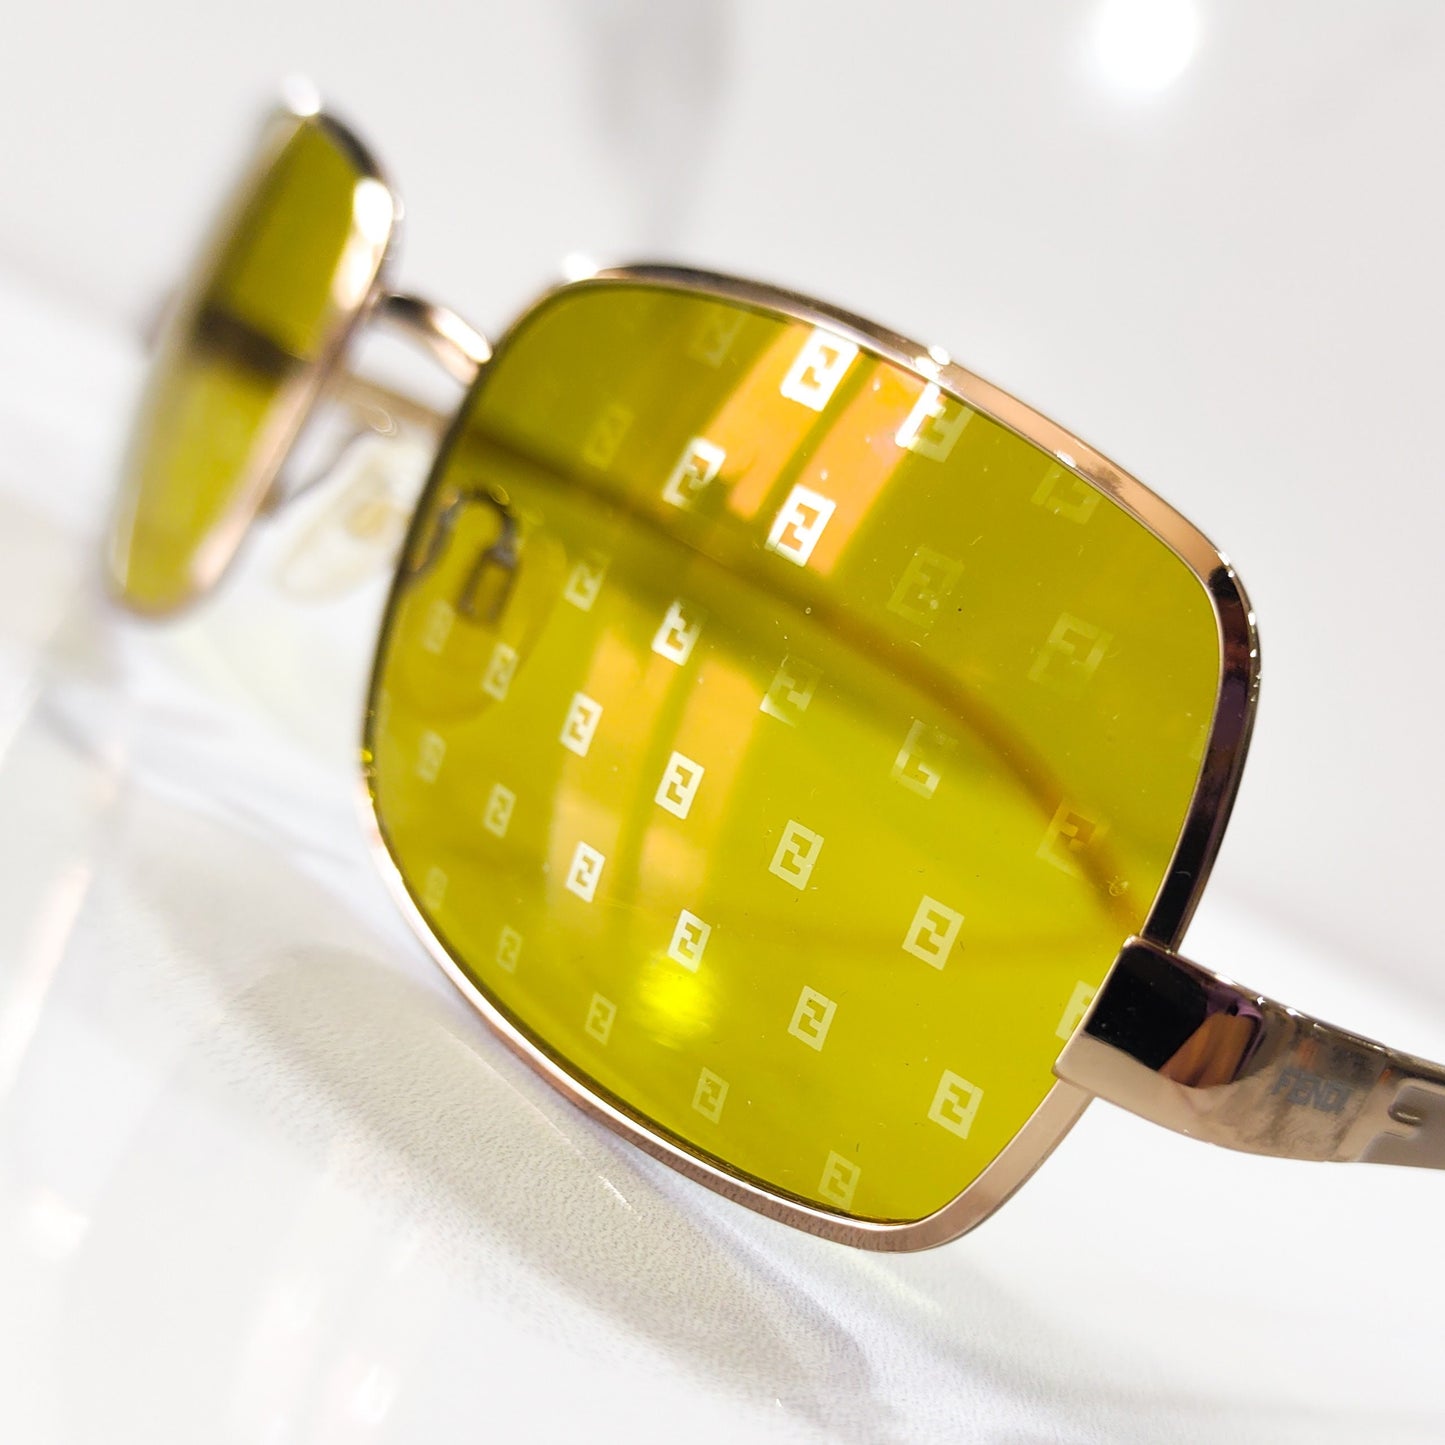 Fendi 型号 SL7331 brille 边框太阳镜 y2k 交织字母图案色调